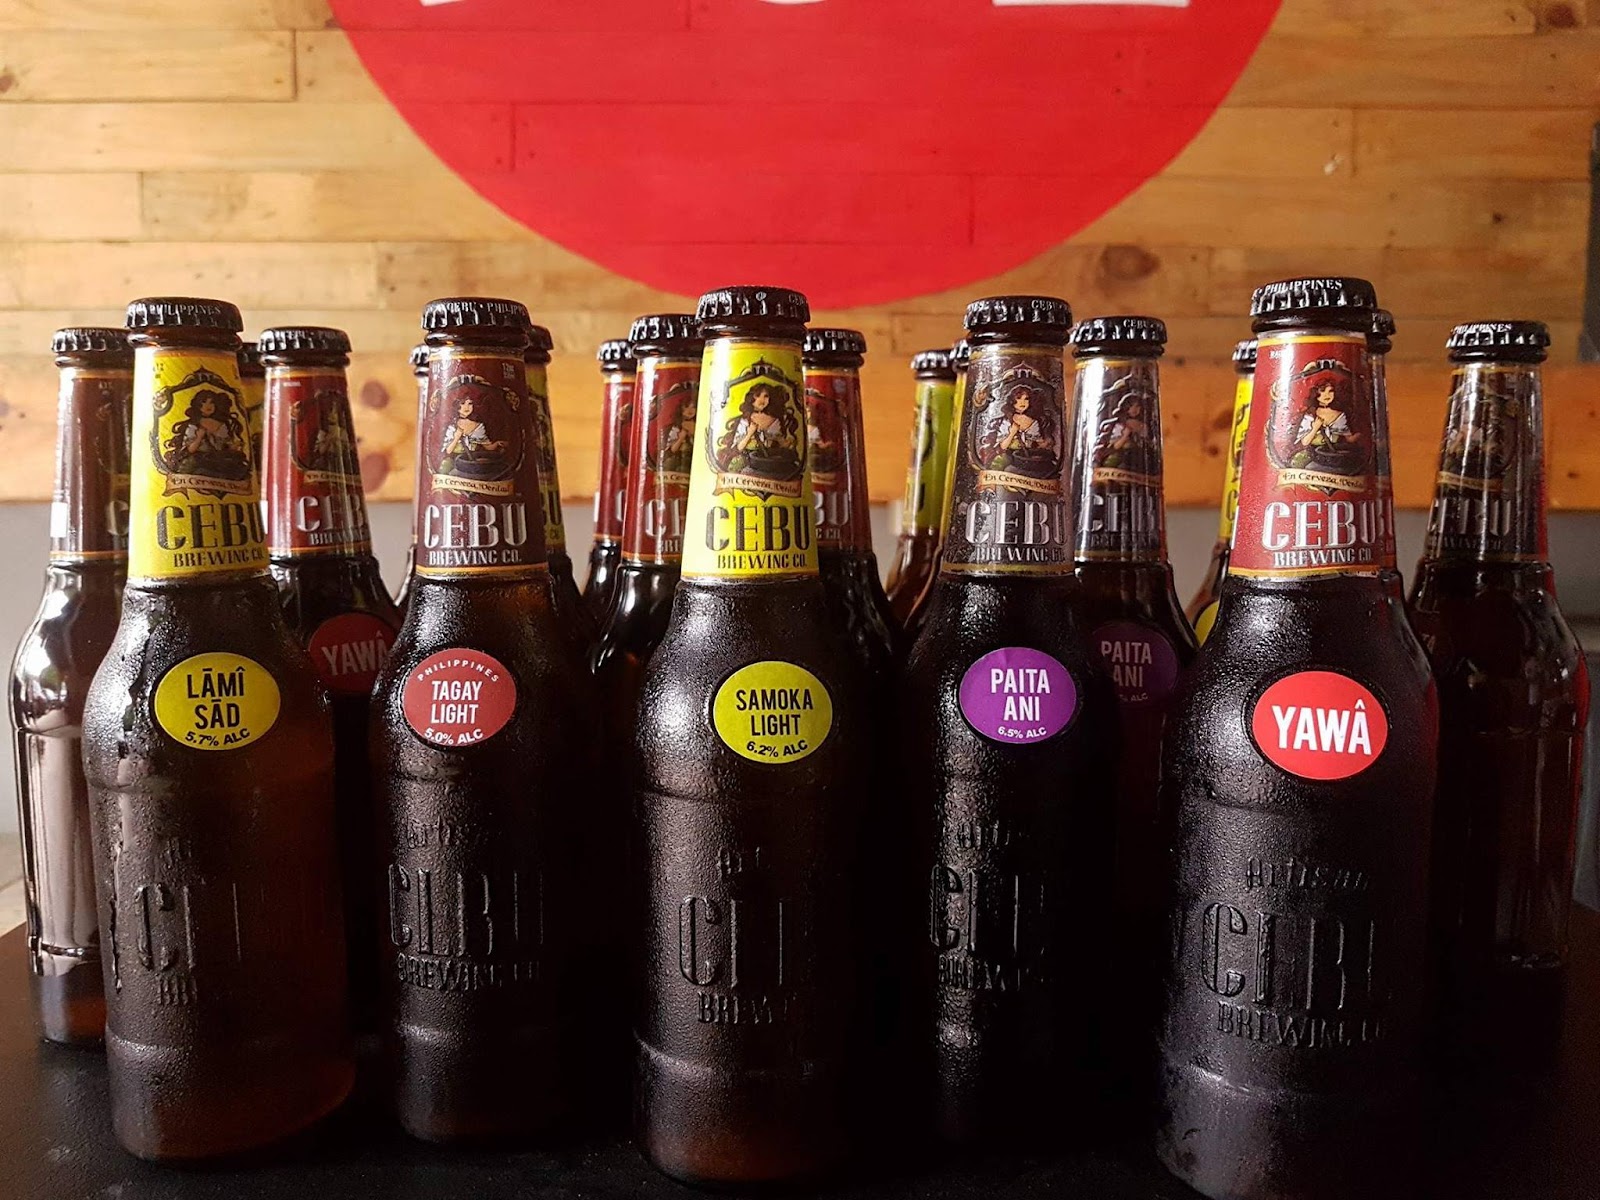 Image of Cebu beer bottles 